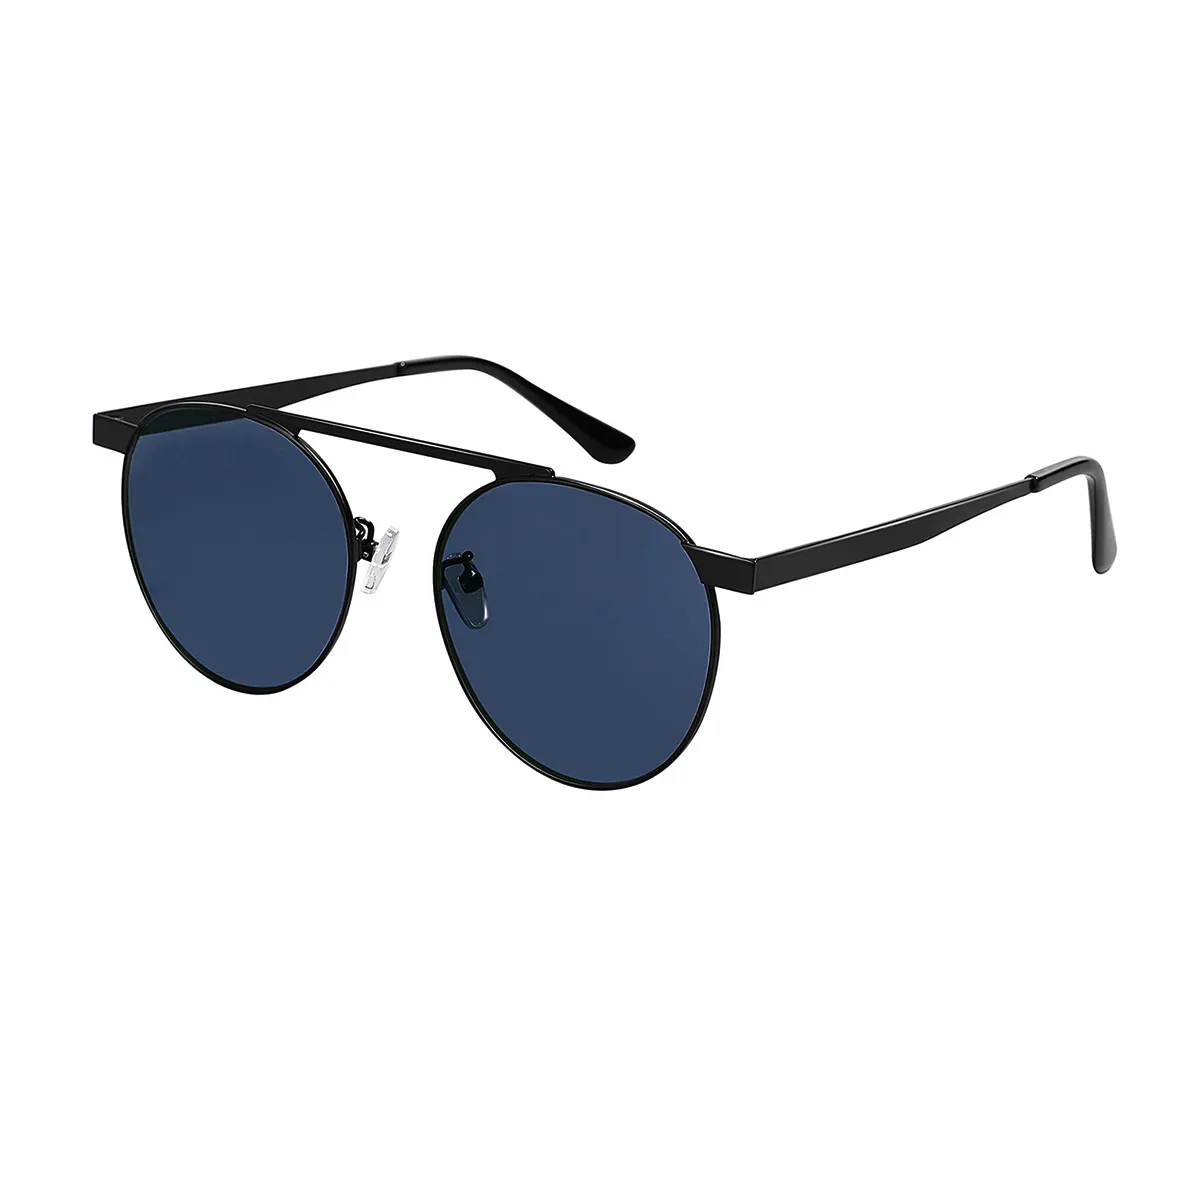 Cochran - Round Black Sunglasses for Women